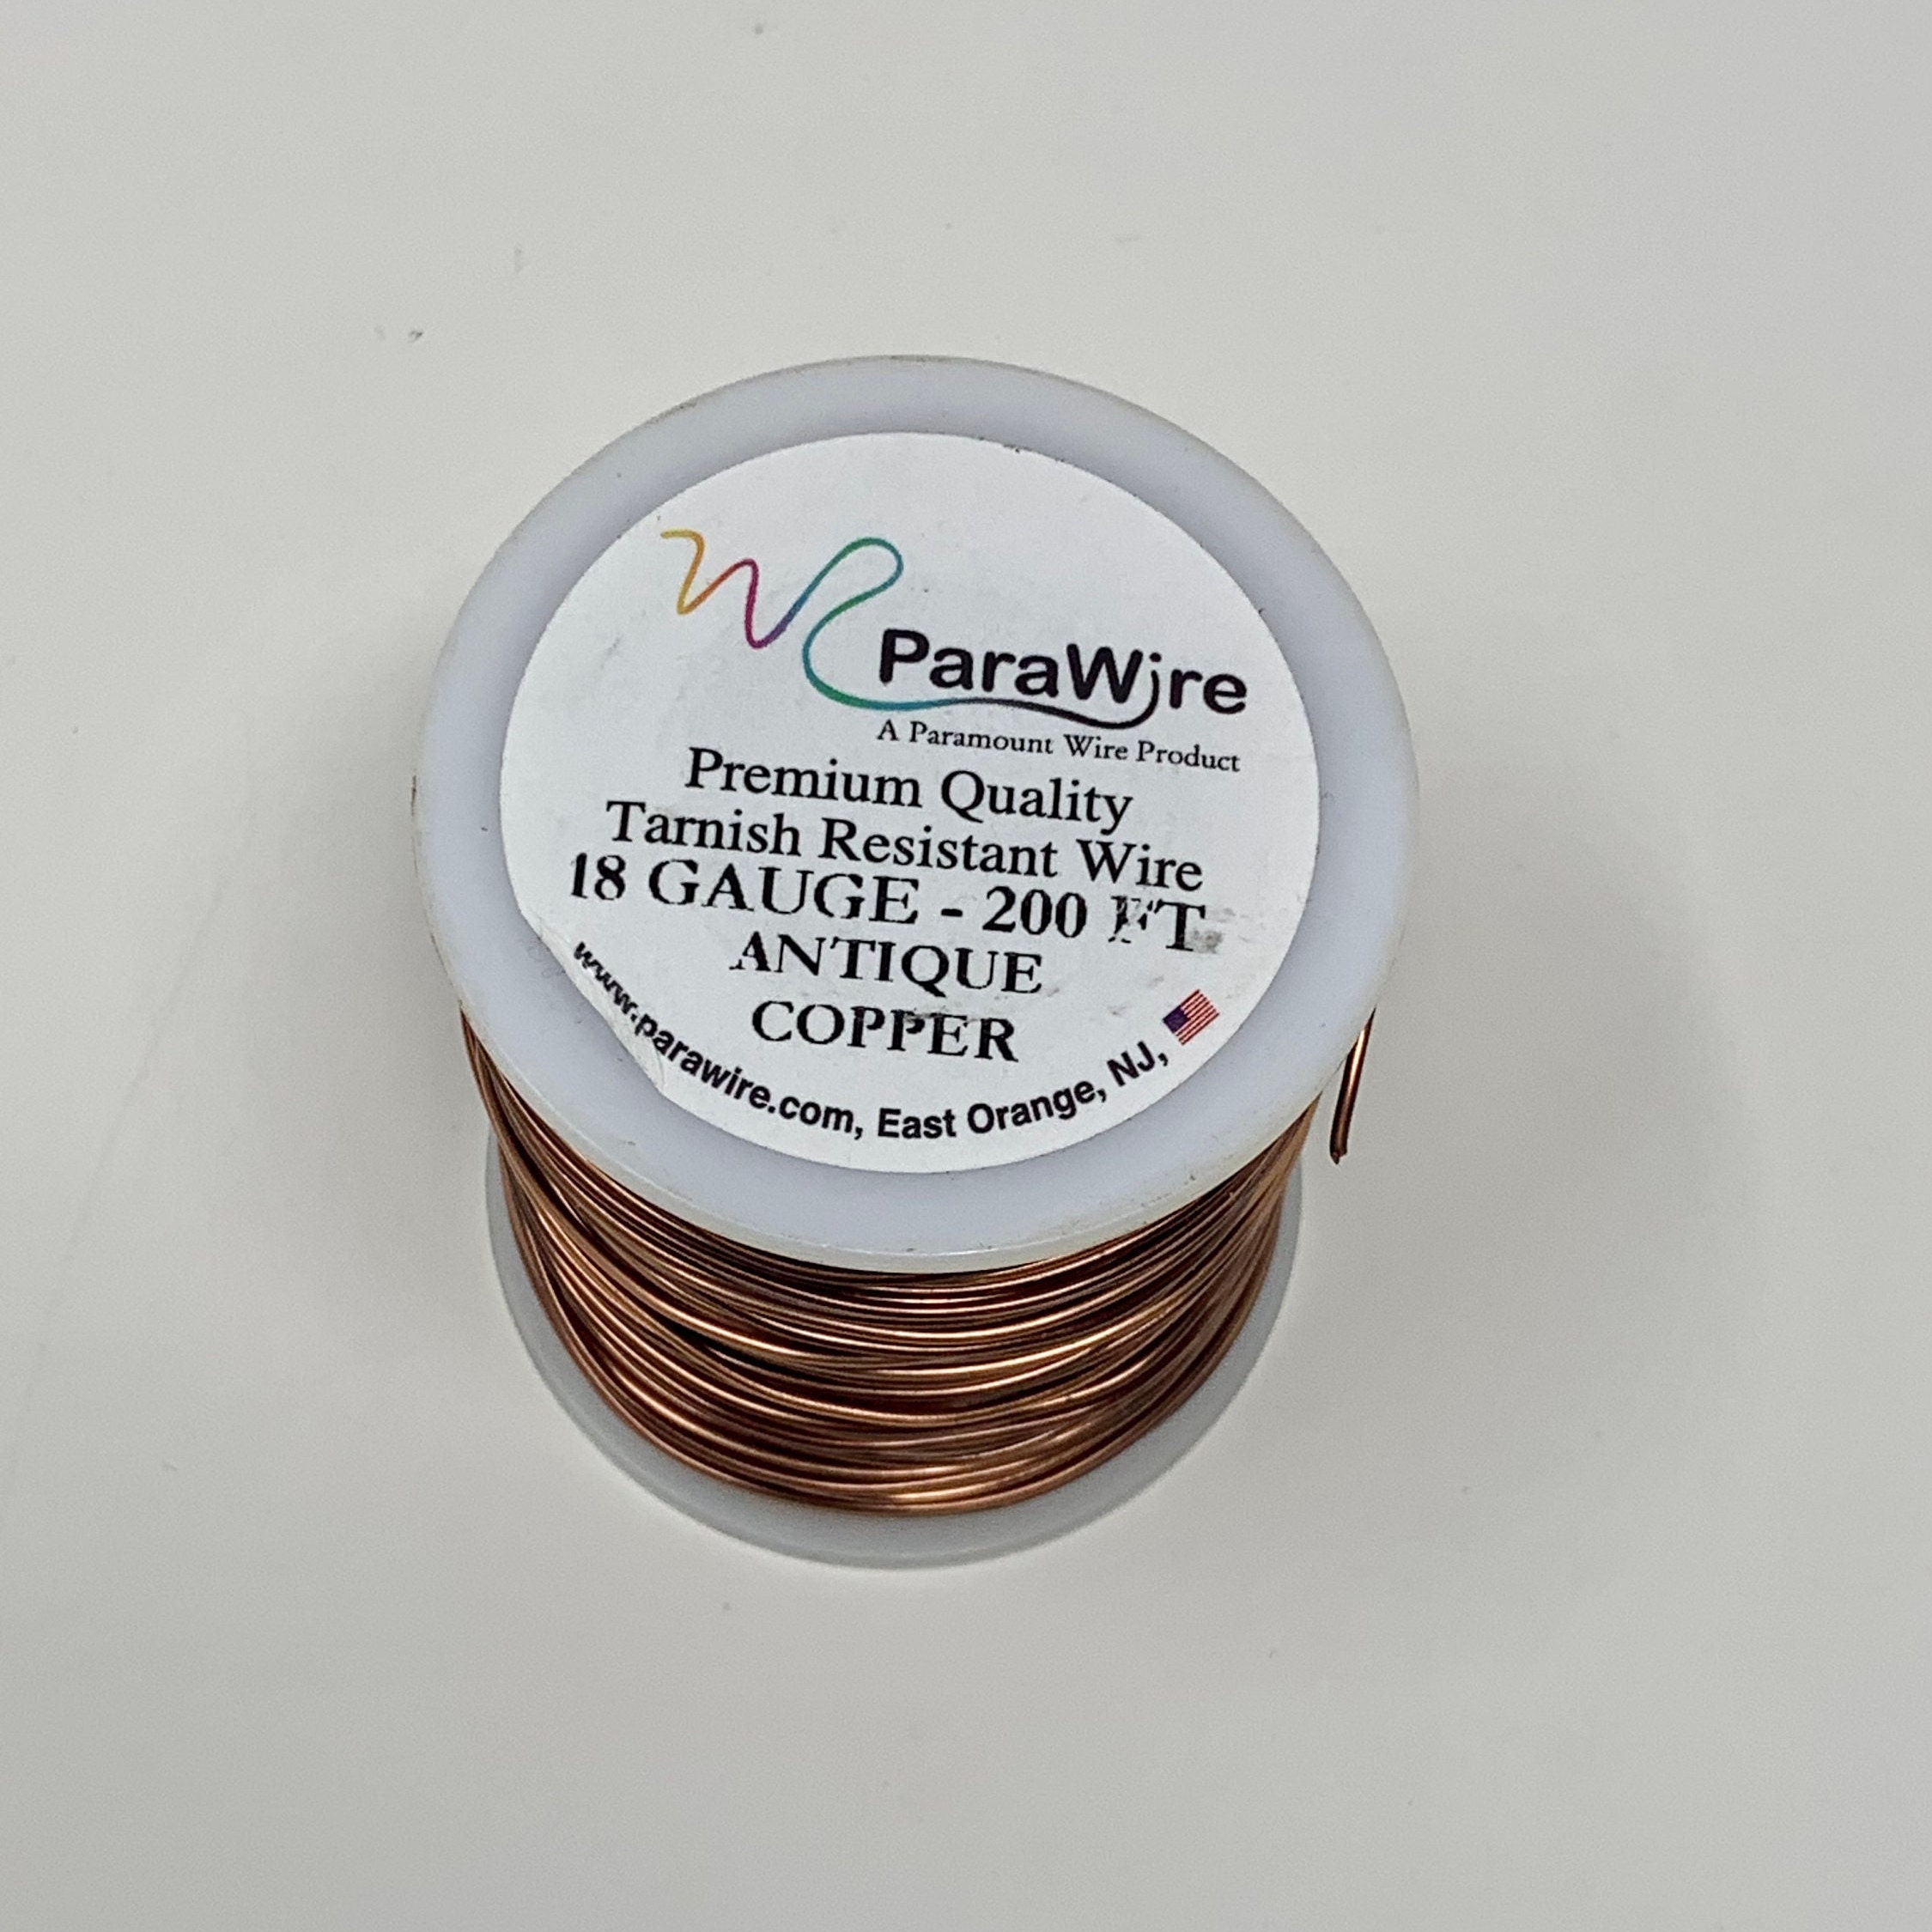 ParaWire Non-Tarnish Antique Copper- 16G